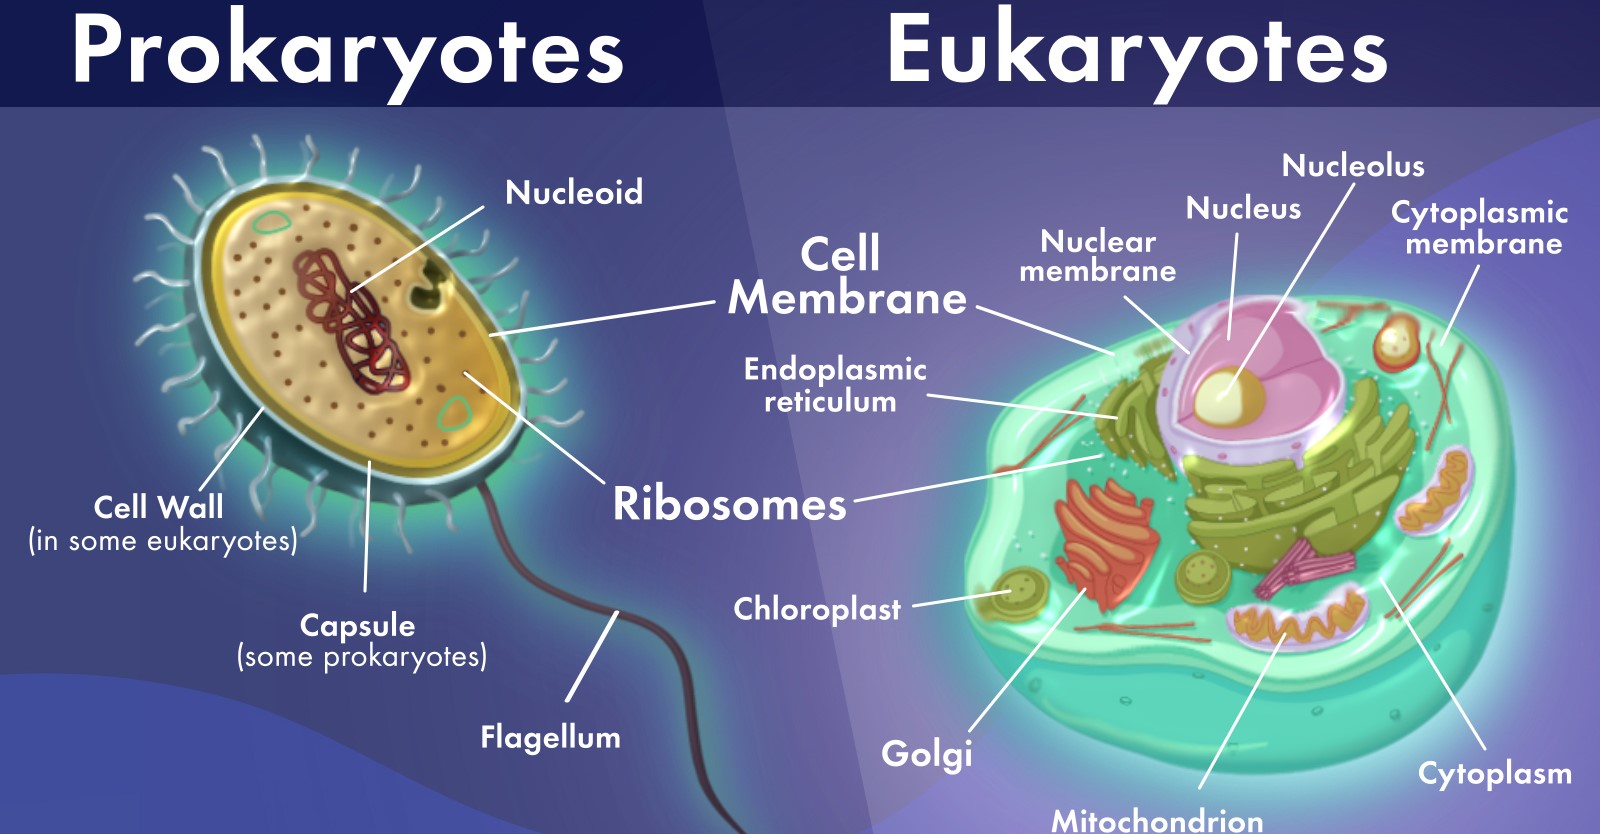 15 Key Differences Between Prokaryotic and Eukaryotic Cells - CBSE ...